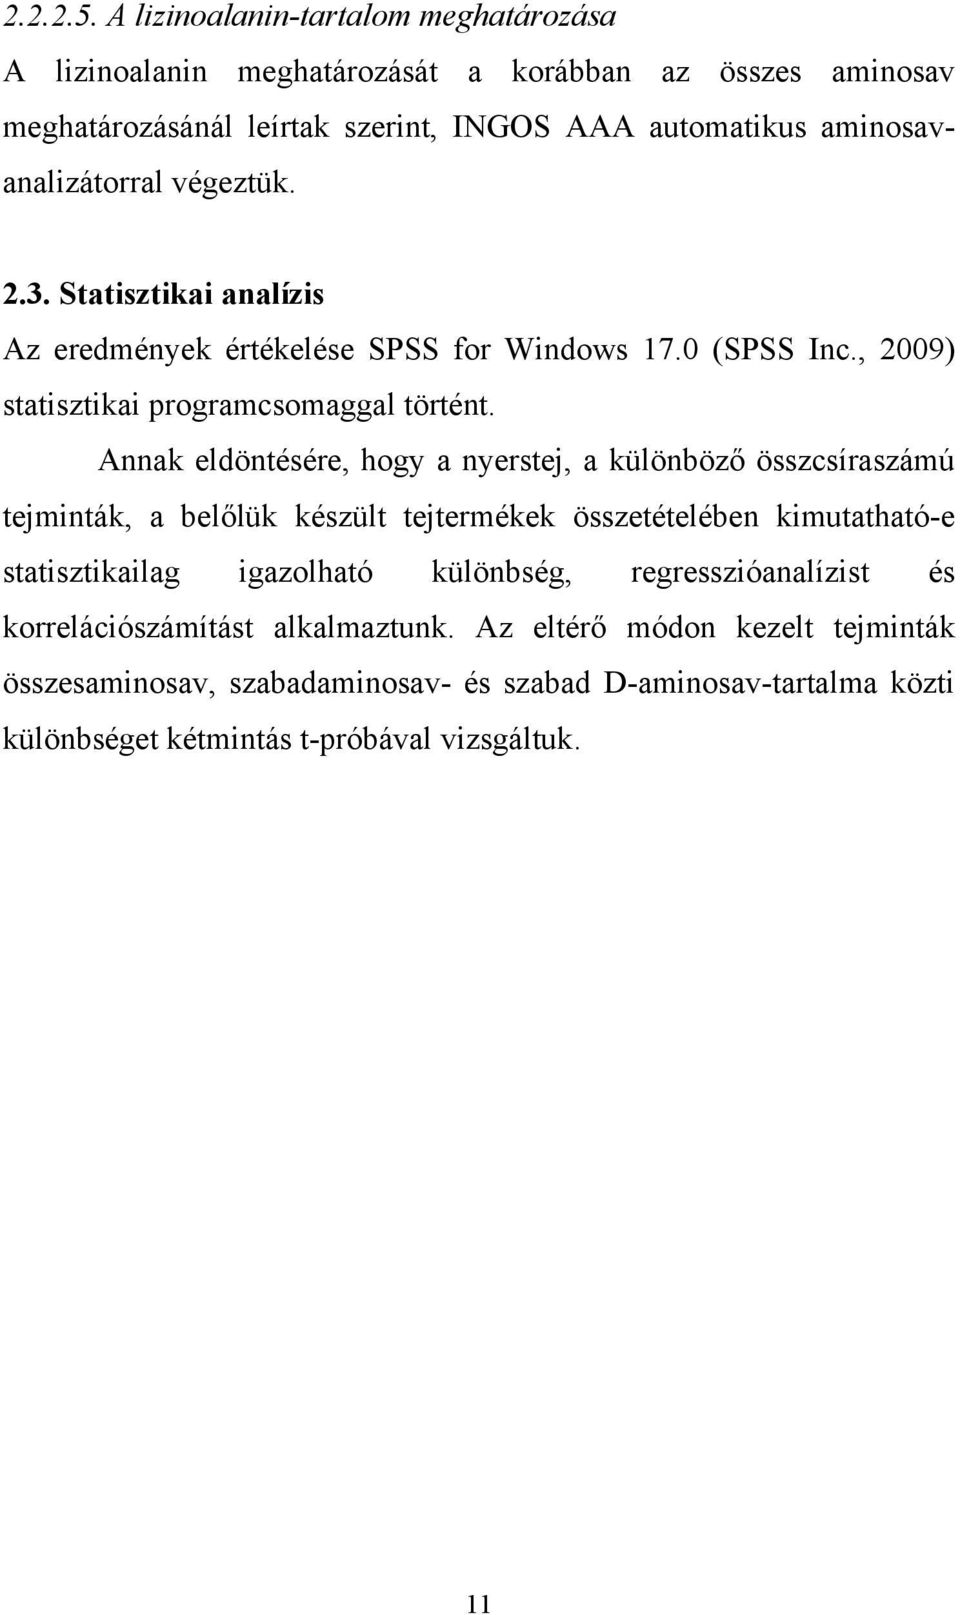 végeztük. 2.3. Statisztikai analízis Az eredmények értékelése SPSS for Windows 17.0 (SPSS Inc., 2009) statisztikai programcsomaggal történt.